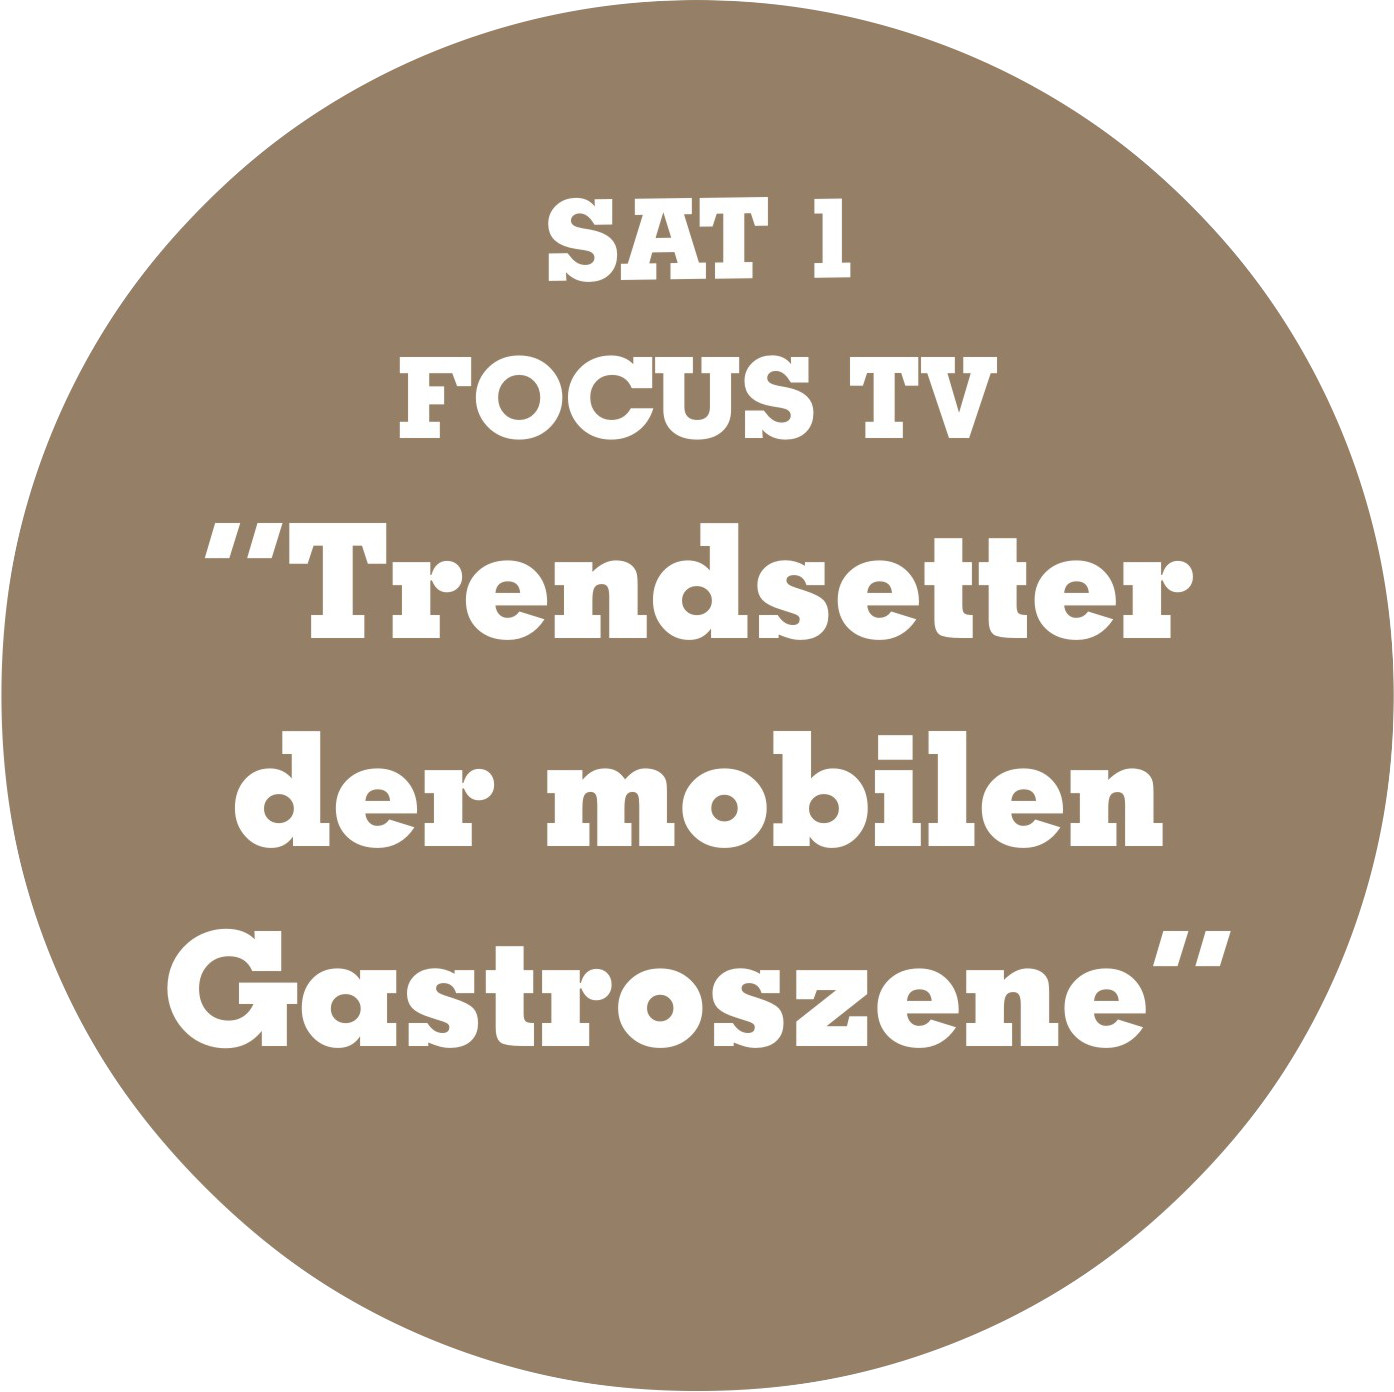 SAL1 und FOCUS TV, RibWich ist Trendsetter